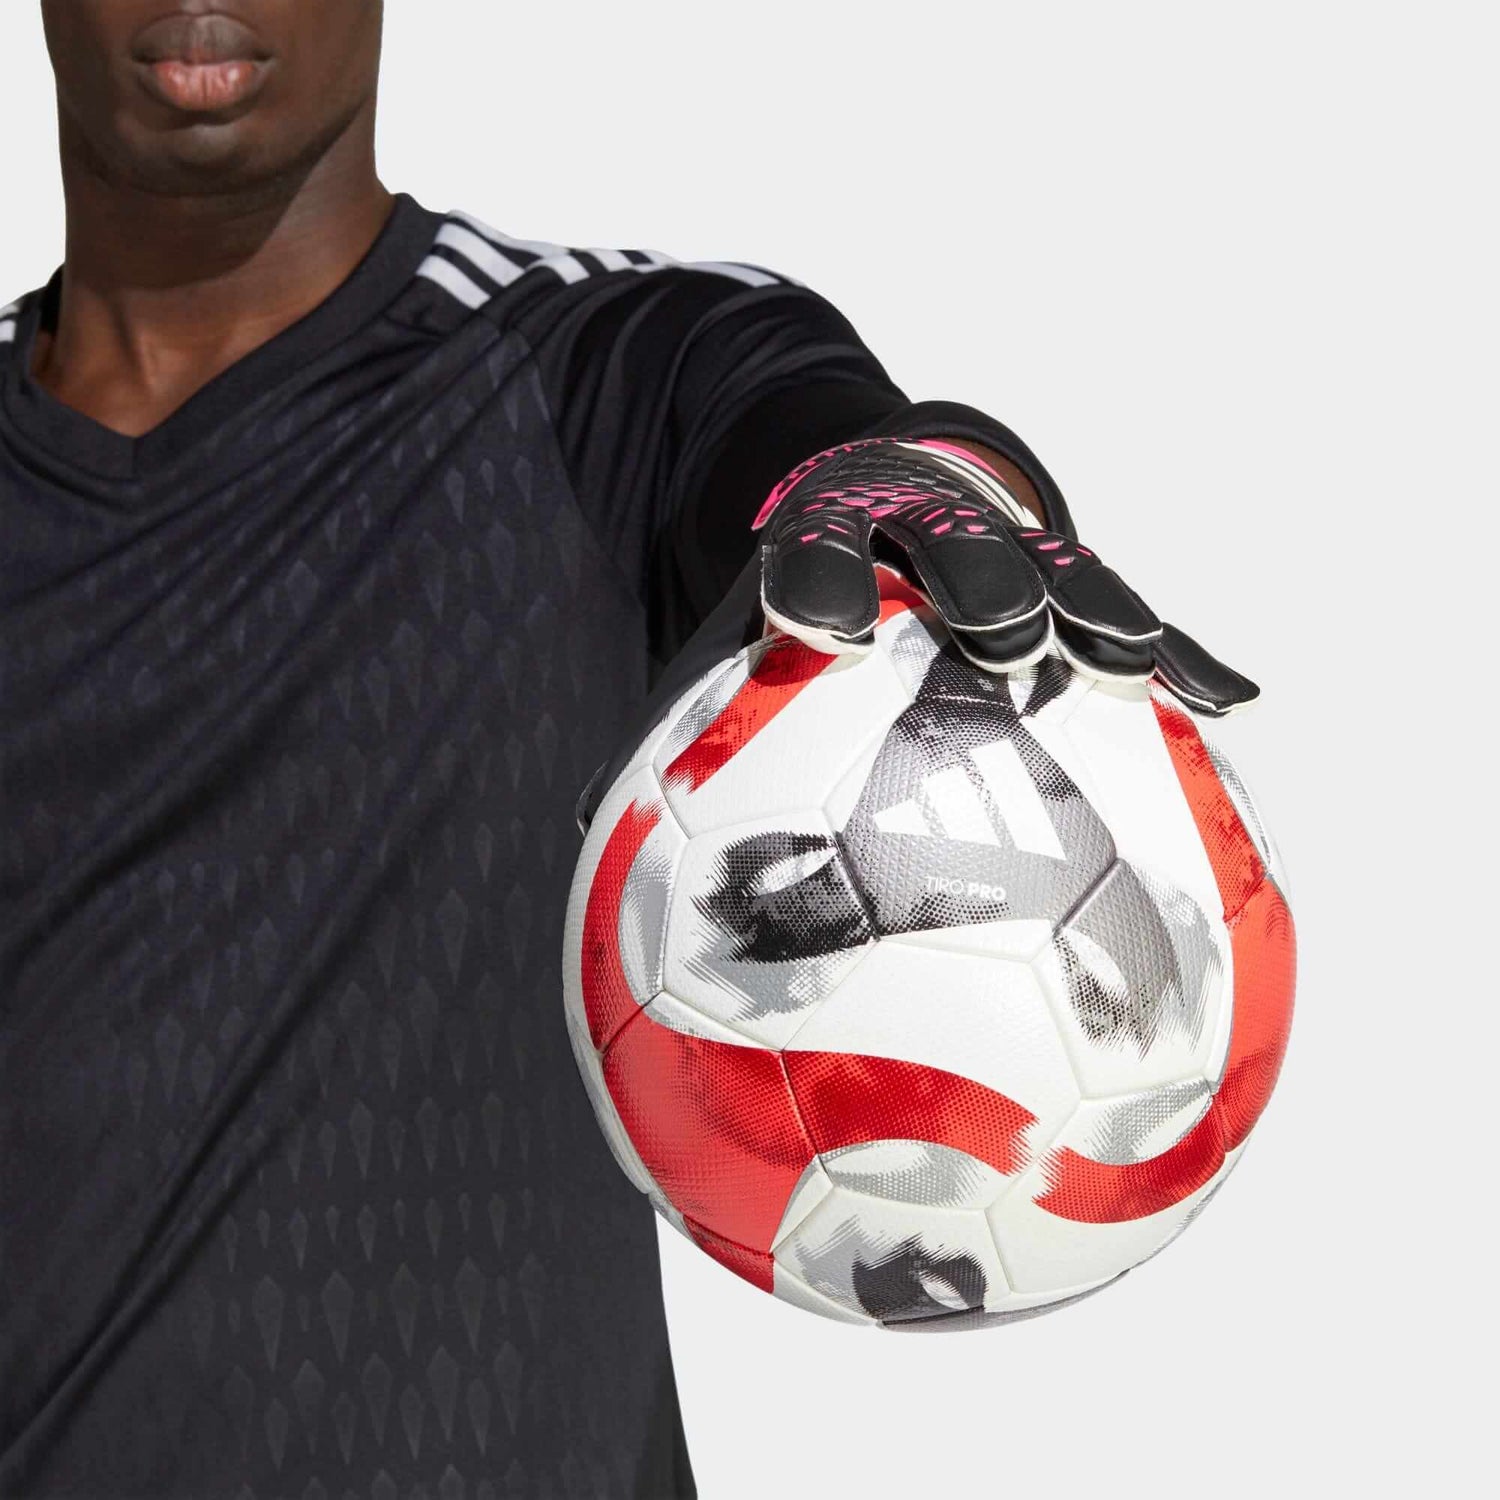 adidas Predator GL Training Goalkeeper Gloves - Black-White-Pink (Model 2)